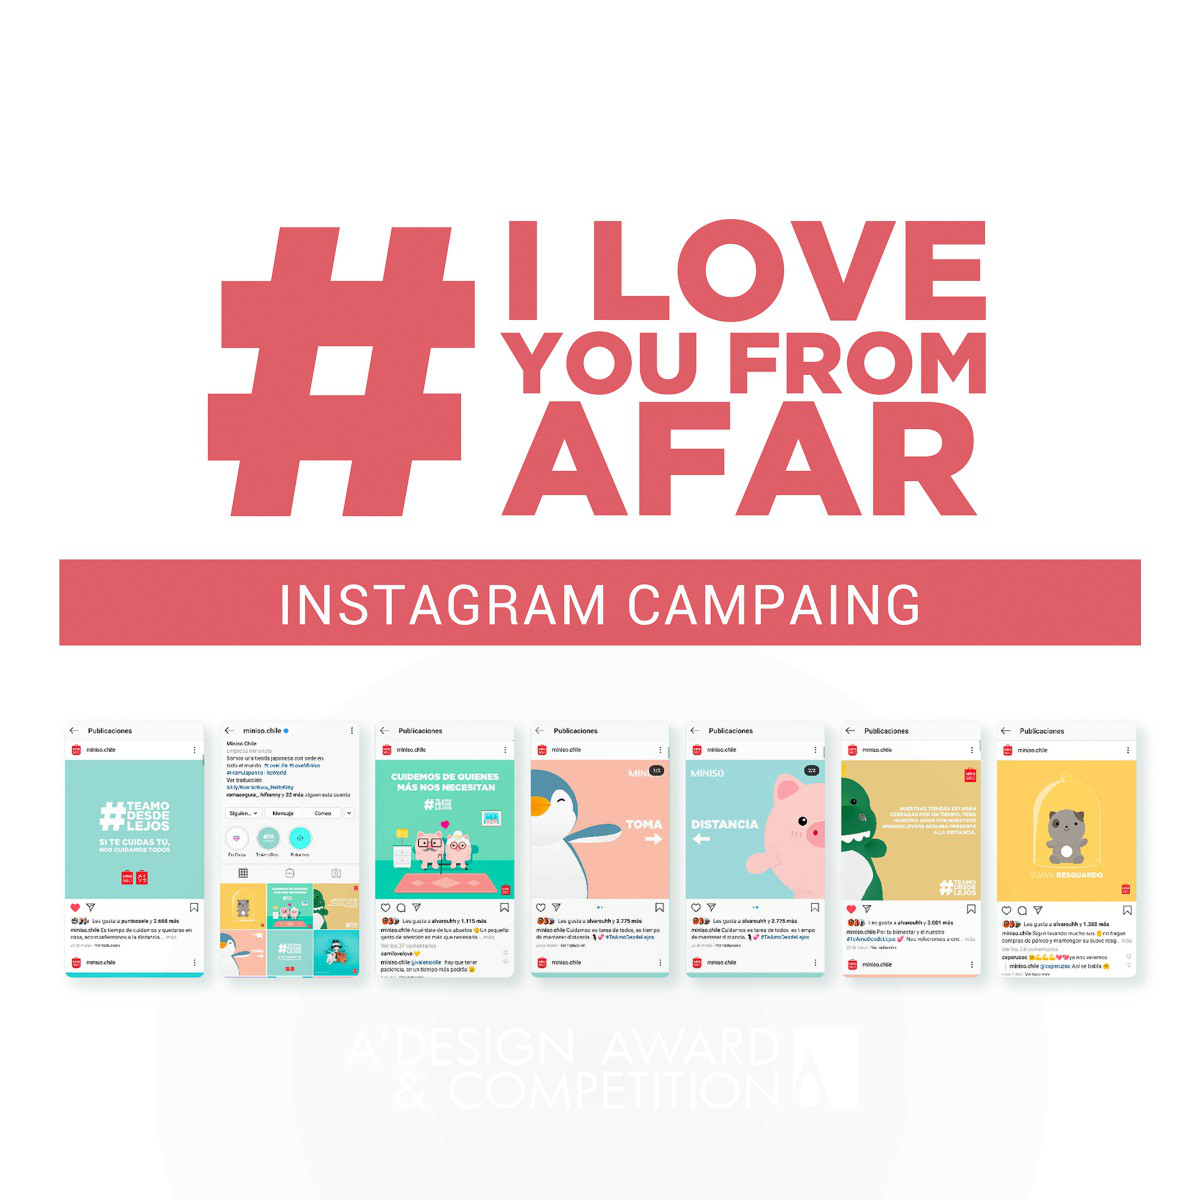 दूर से प्यार: एक अद्वितीय ऑनलाइन अभियान